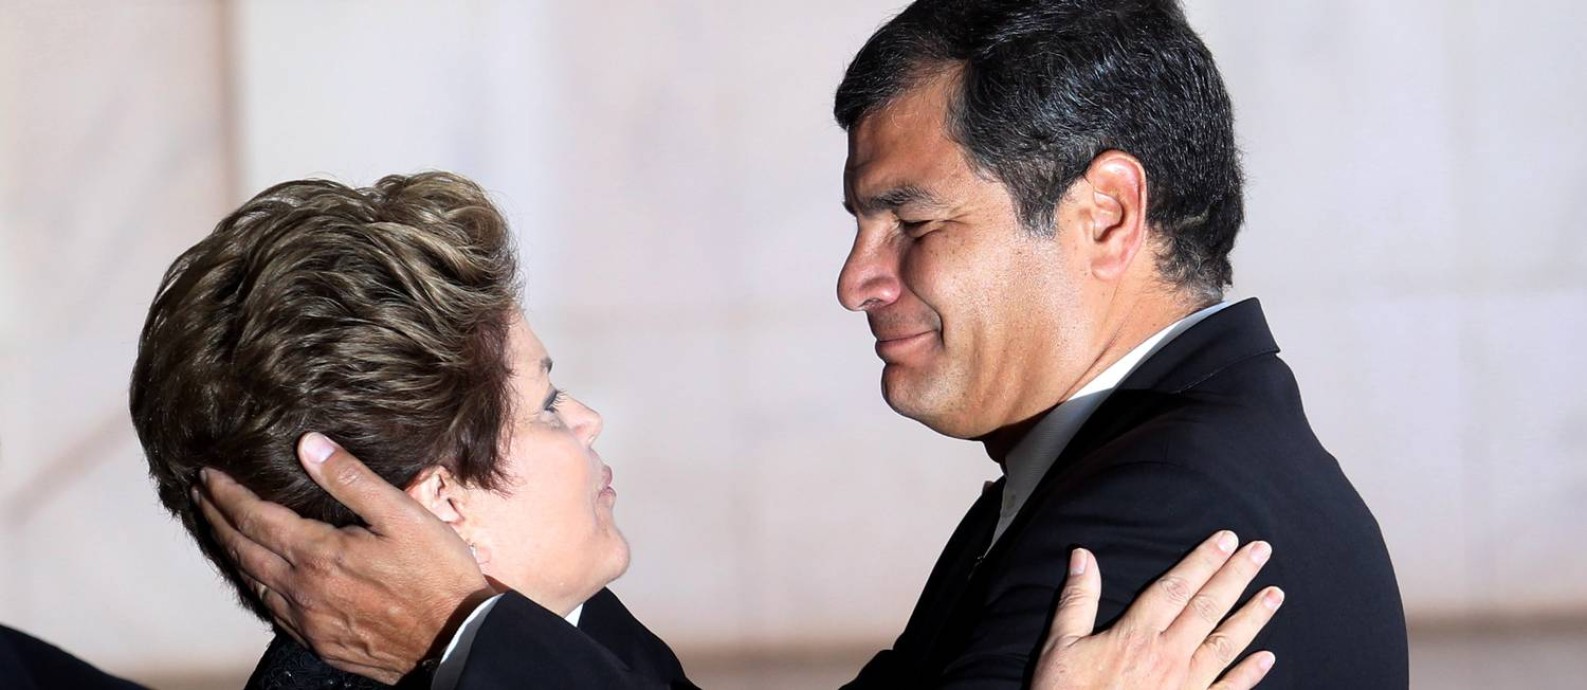 Dilma Rousseff e o presidente Rafael Correa do Equador no Palacio do Itamaraty durante a Reunião dos chefes de Estado do Mercosul, dos Estados Associados e dos países convidados, em 2012 Foto: Gustavo Miranda / Agência O Globo